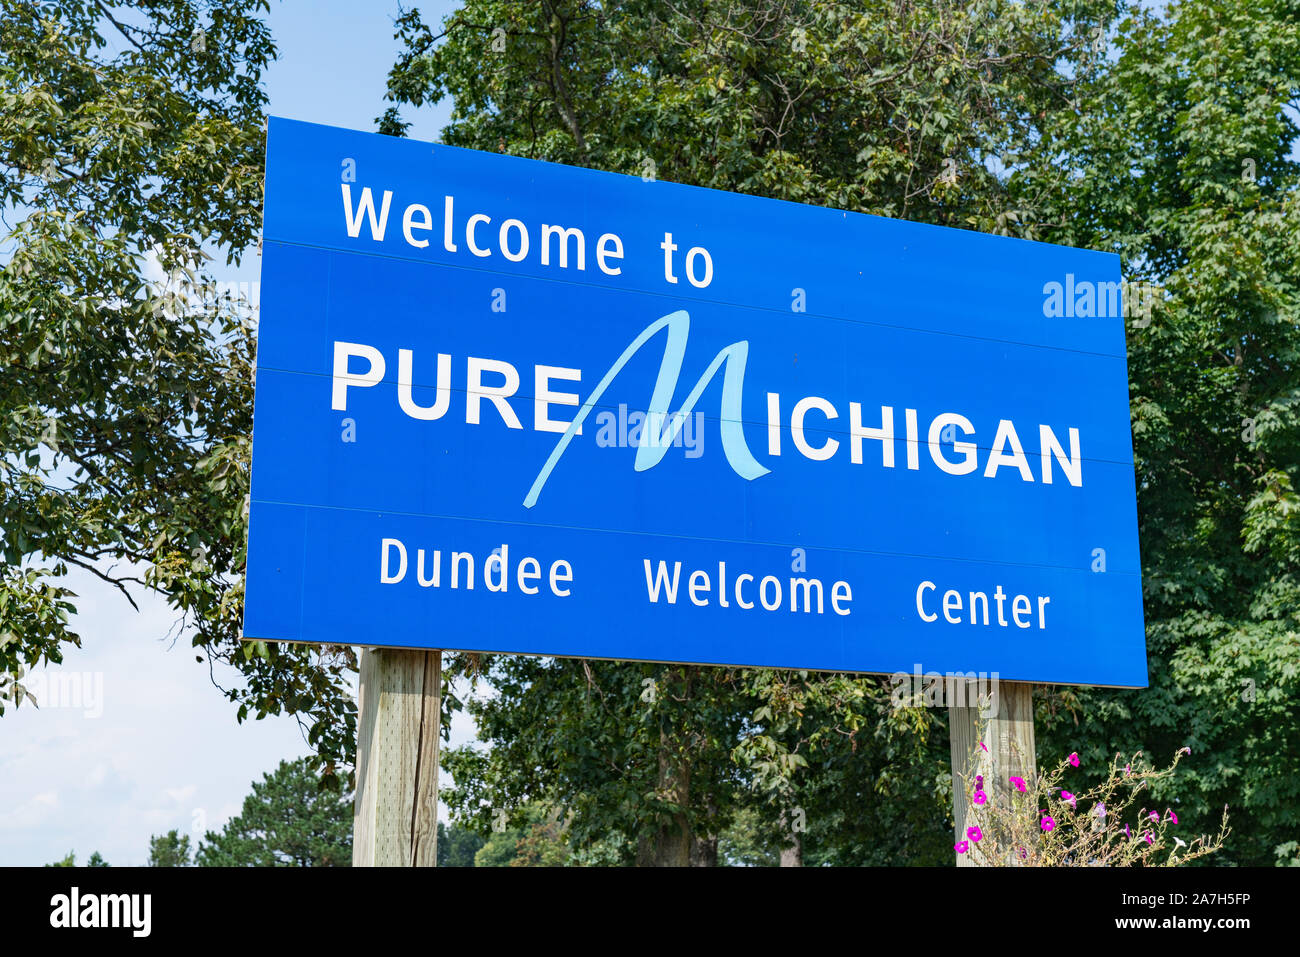 Petersburgo, MI - Septiembre 21, 2019: Bienvenidos a Pure Michigan firmar en el Centro de Bienvenida de Dundee Foto de stock